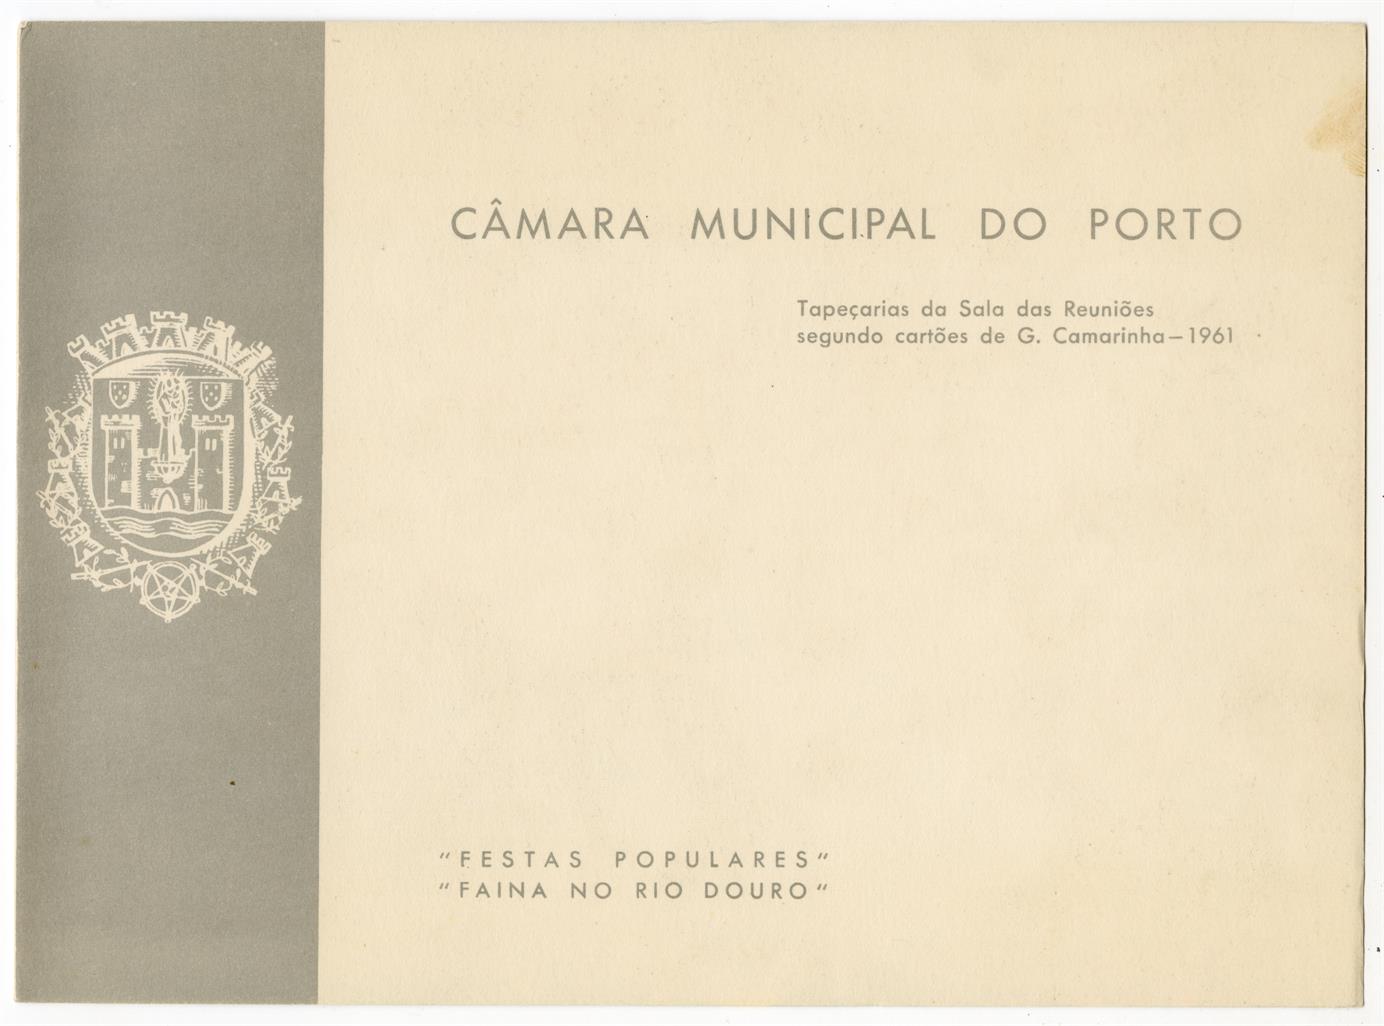 Tapeçarias da sala das reuniões segundo cartões de G. Camarinha : Festas populares; Faina no Rio Douro